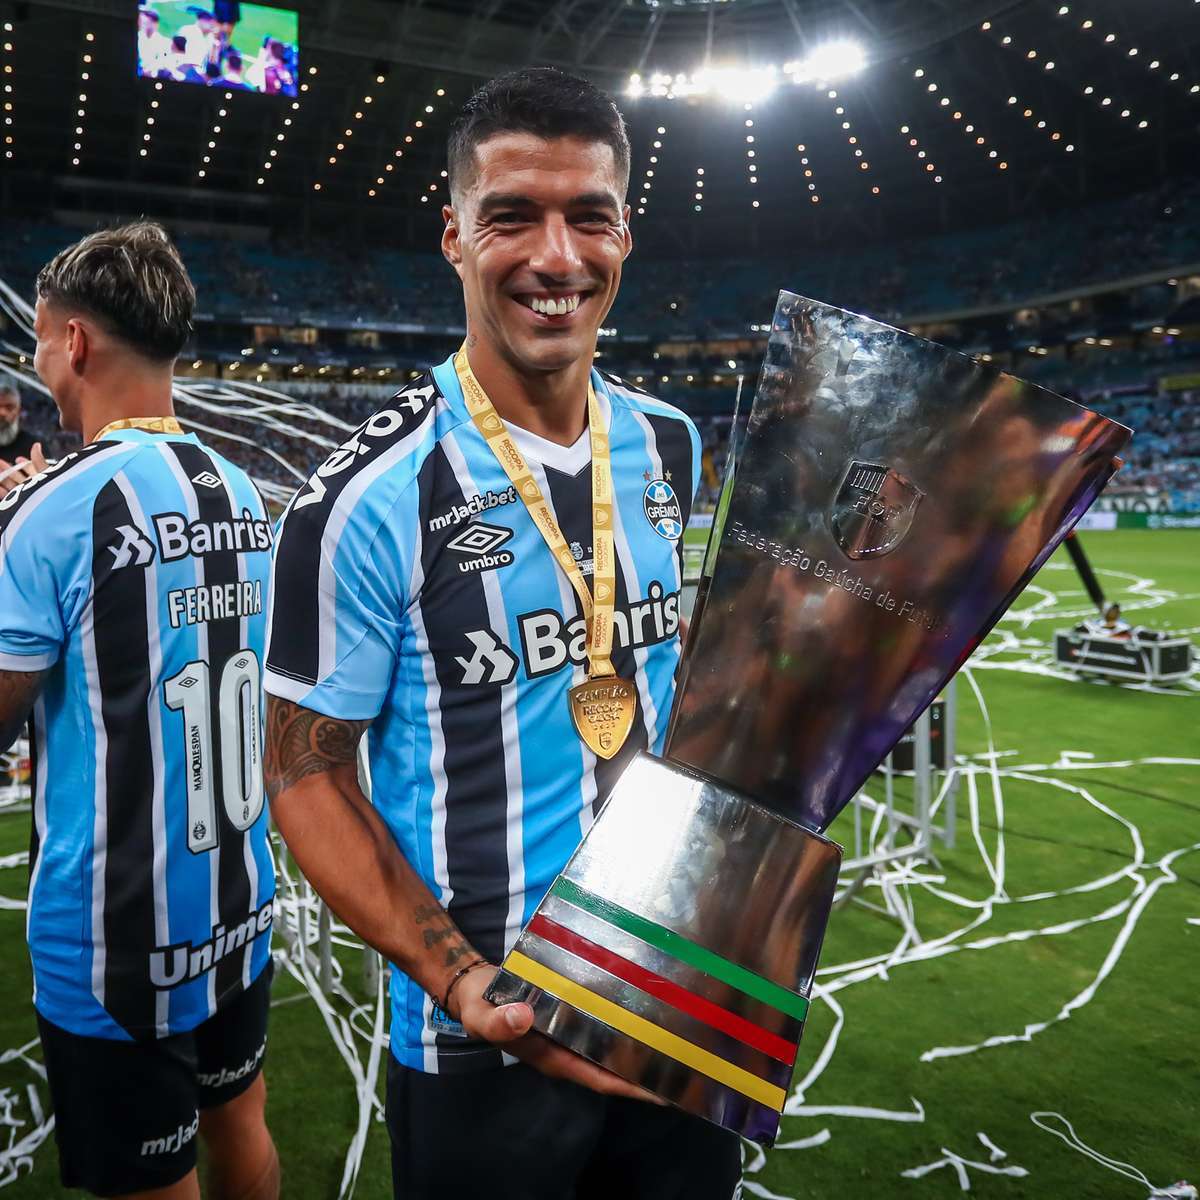 O sorriso de campeão, que é sua marca registrada, também surgiu no Grêmio. Venceu o Gaúcho e a Recopa